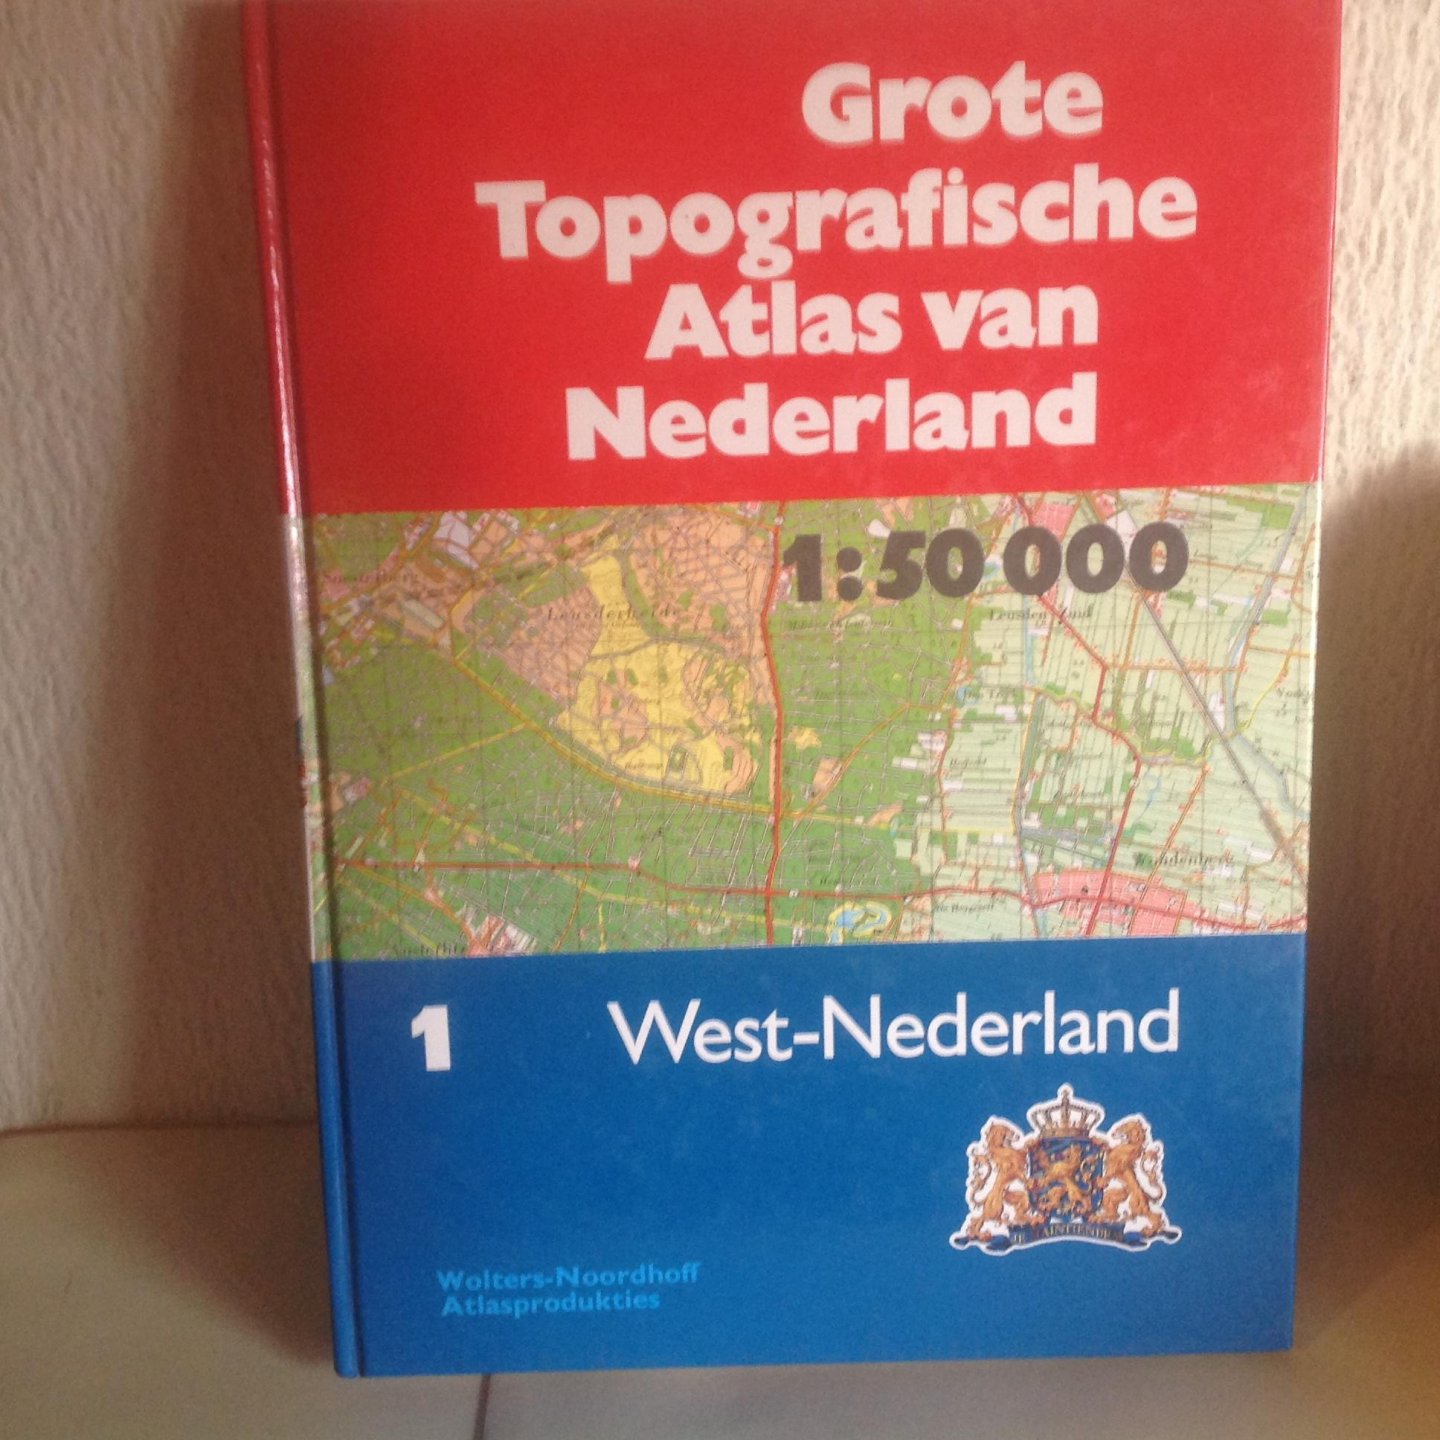  - Grote topografische atlas van nederland / 1 west / druk 1